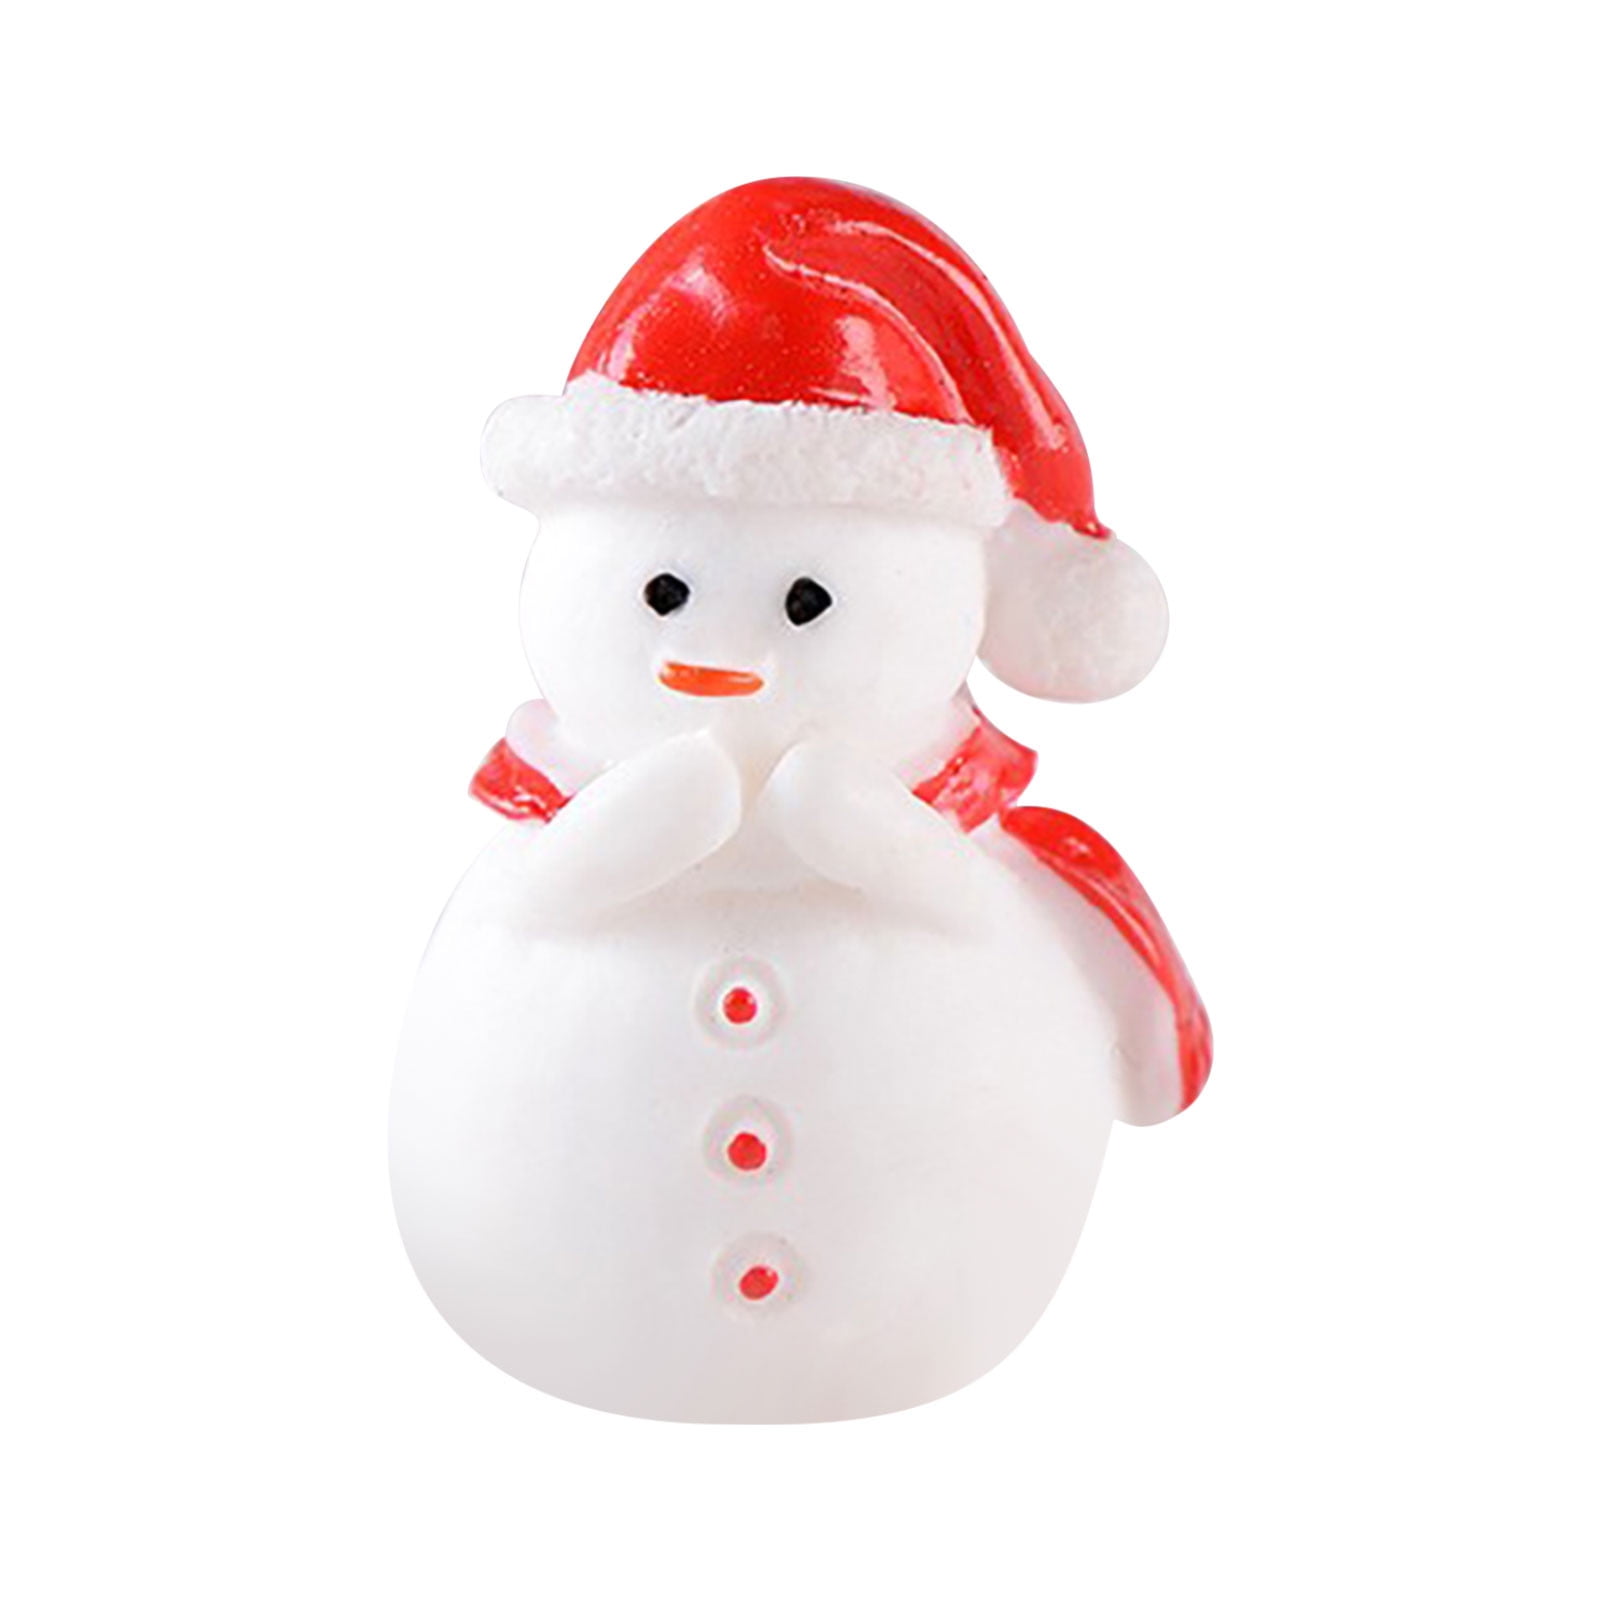 IMIKEYA 200 Pcs Mini Snowman Mini Accessories Phone Case Accessories  Playset Accessories Christmas Snowman Decor Snowman Figurines Christmas